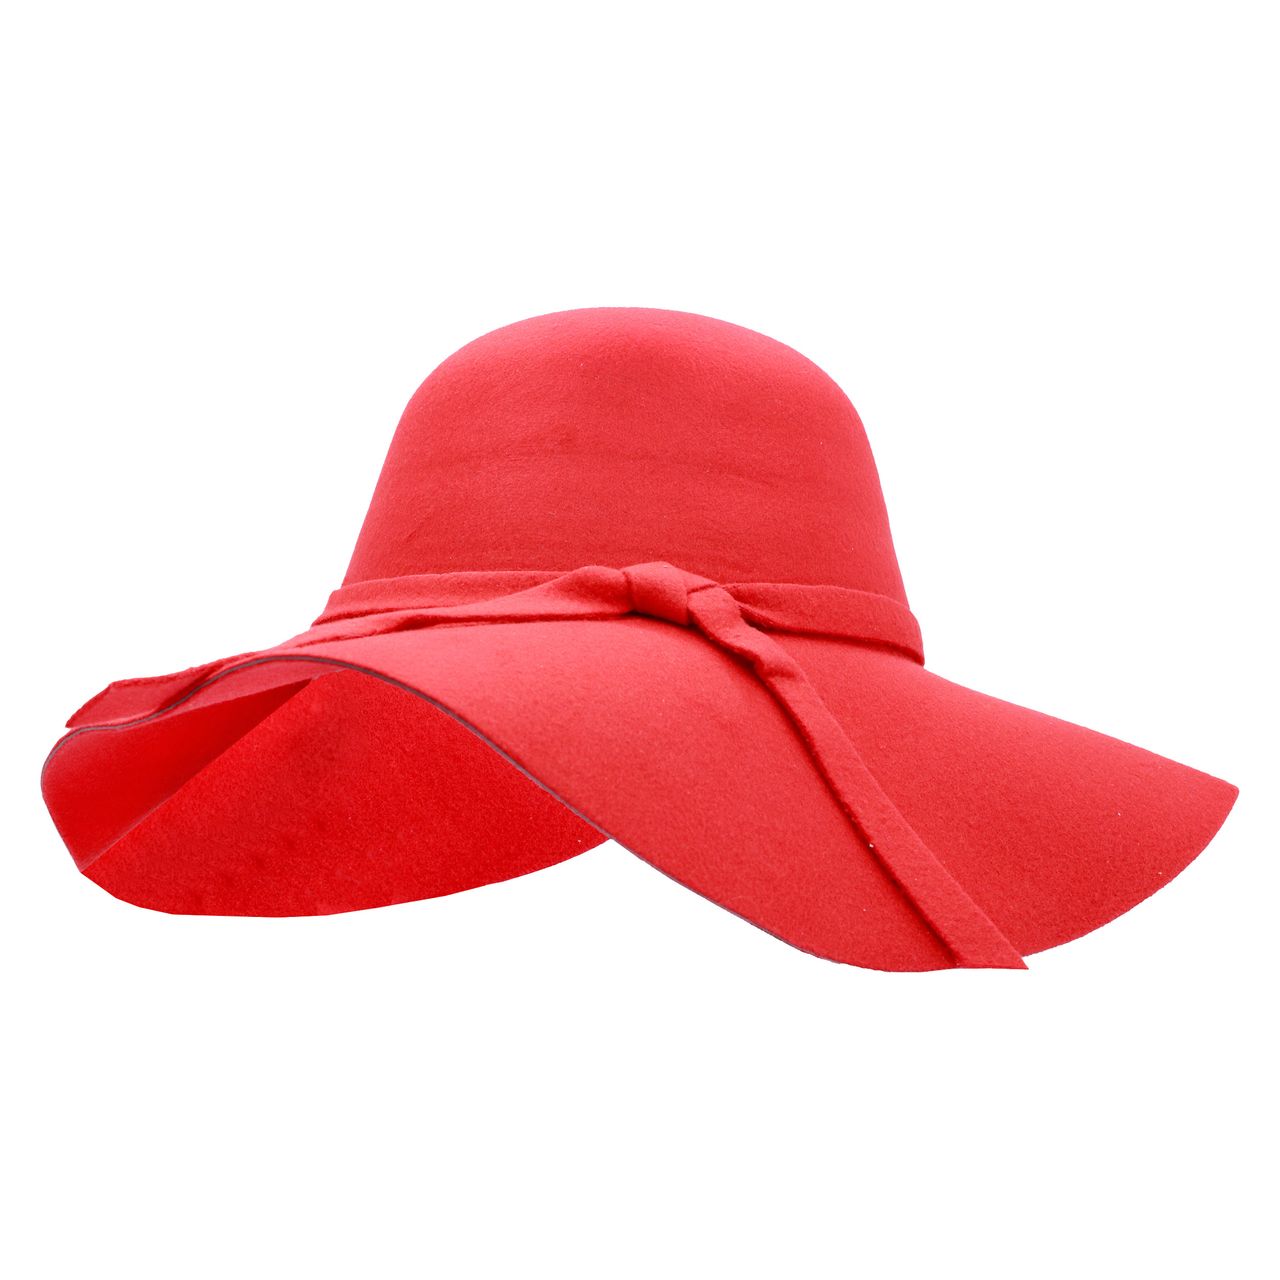 کلاه شاپو مدل شهرزادی کد 51204